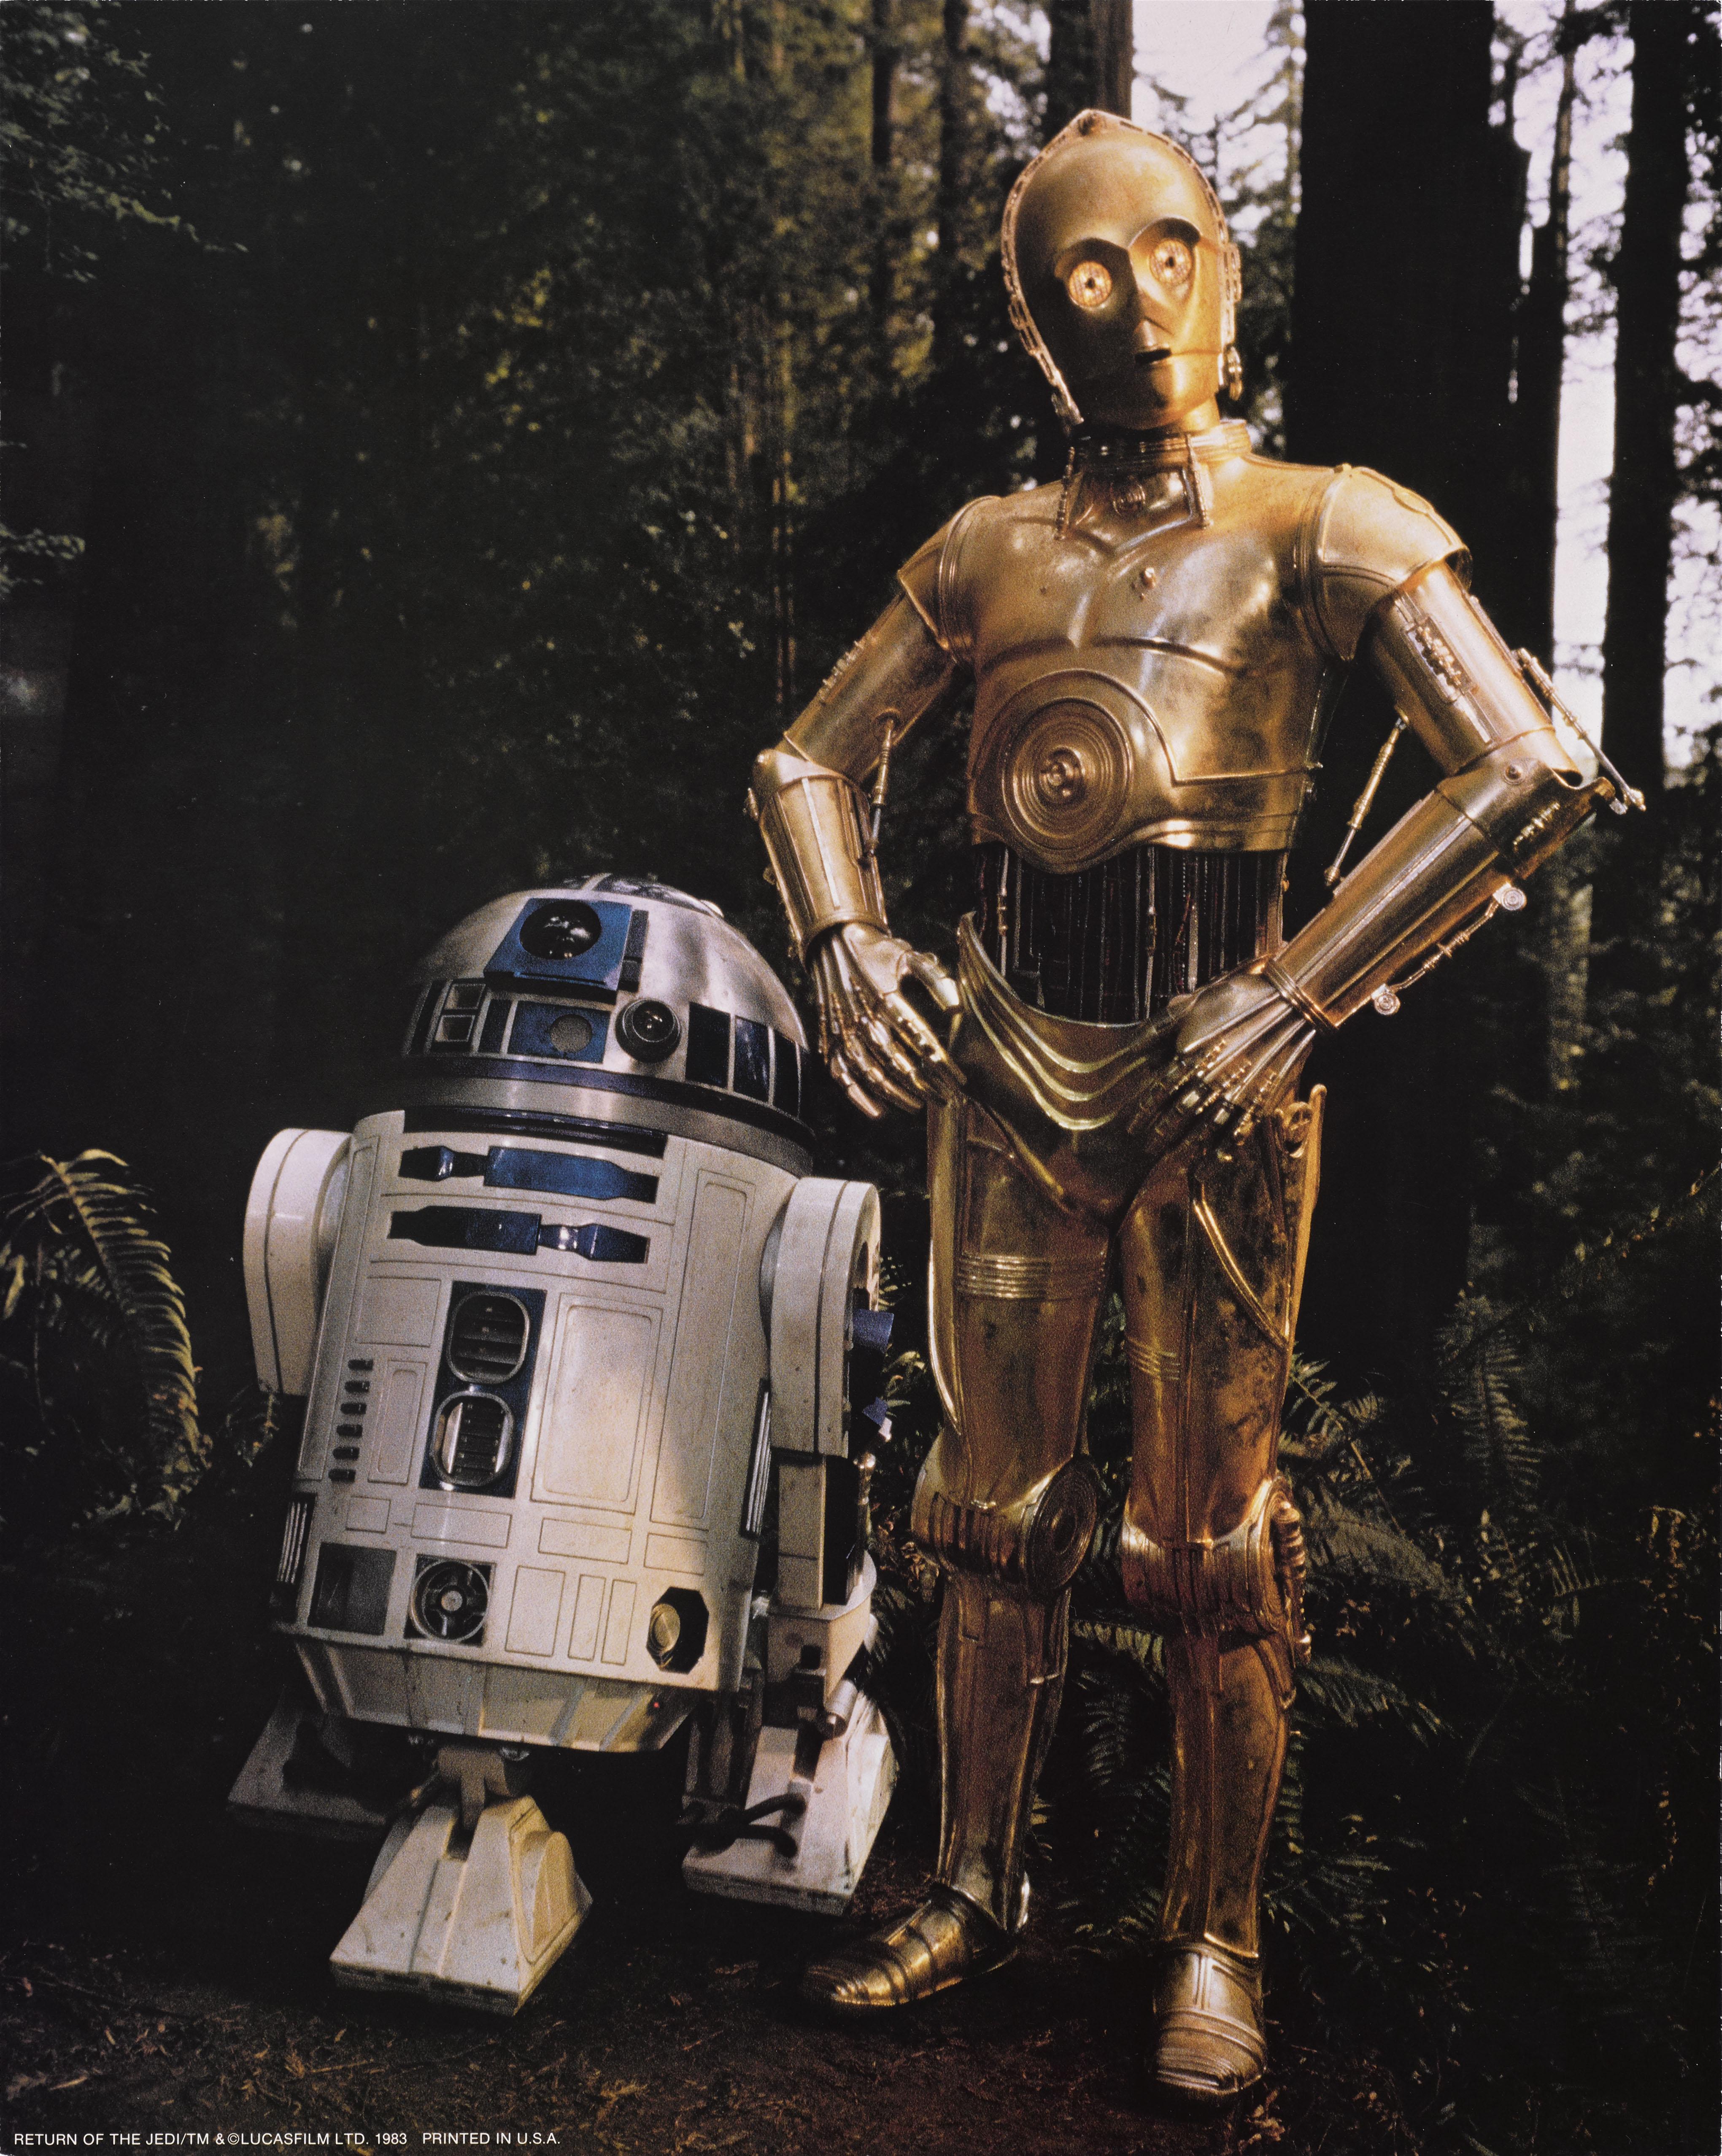 Originales überdimensioniertes US-Standbild aus dem dritten Star Wars-Film Return of the Jedi von 1983. In den Hauptrollen Mark Hamill, Harrison Ford, Carrie Fisher. Bei dem Film führte Richard Marquand Regie.
Das Stück ist ungefaltet und wird